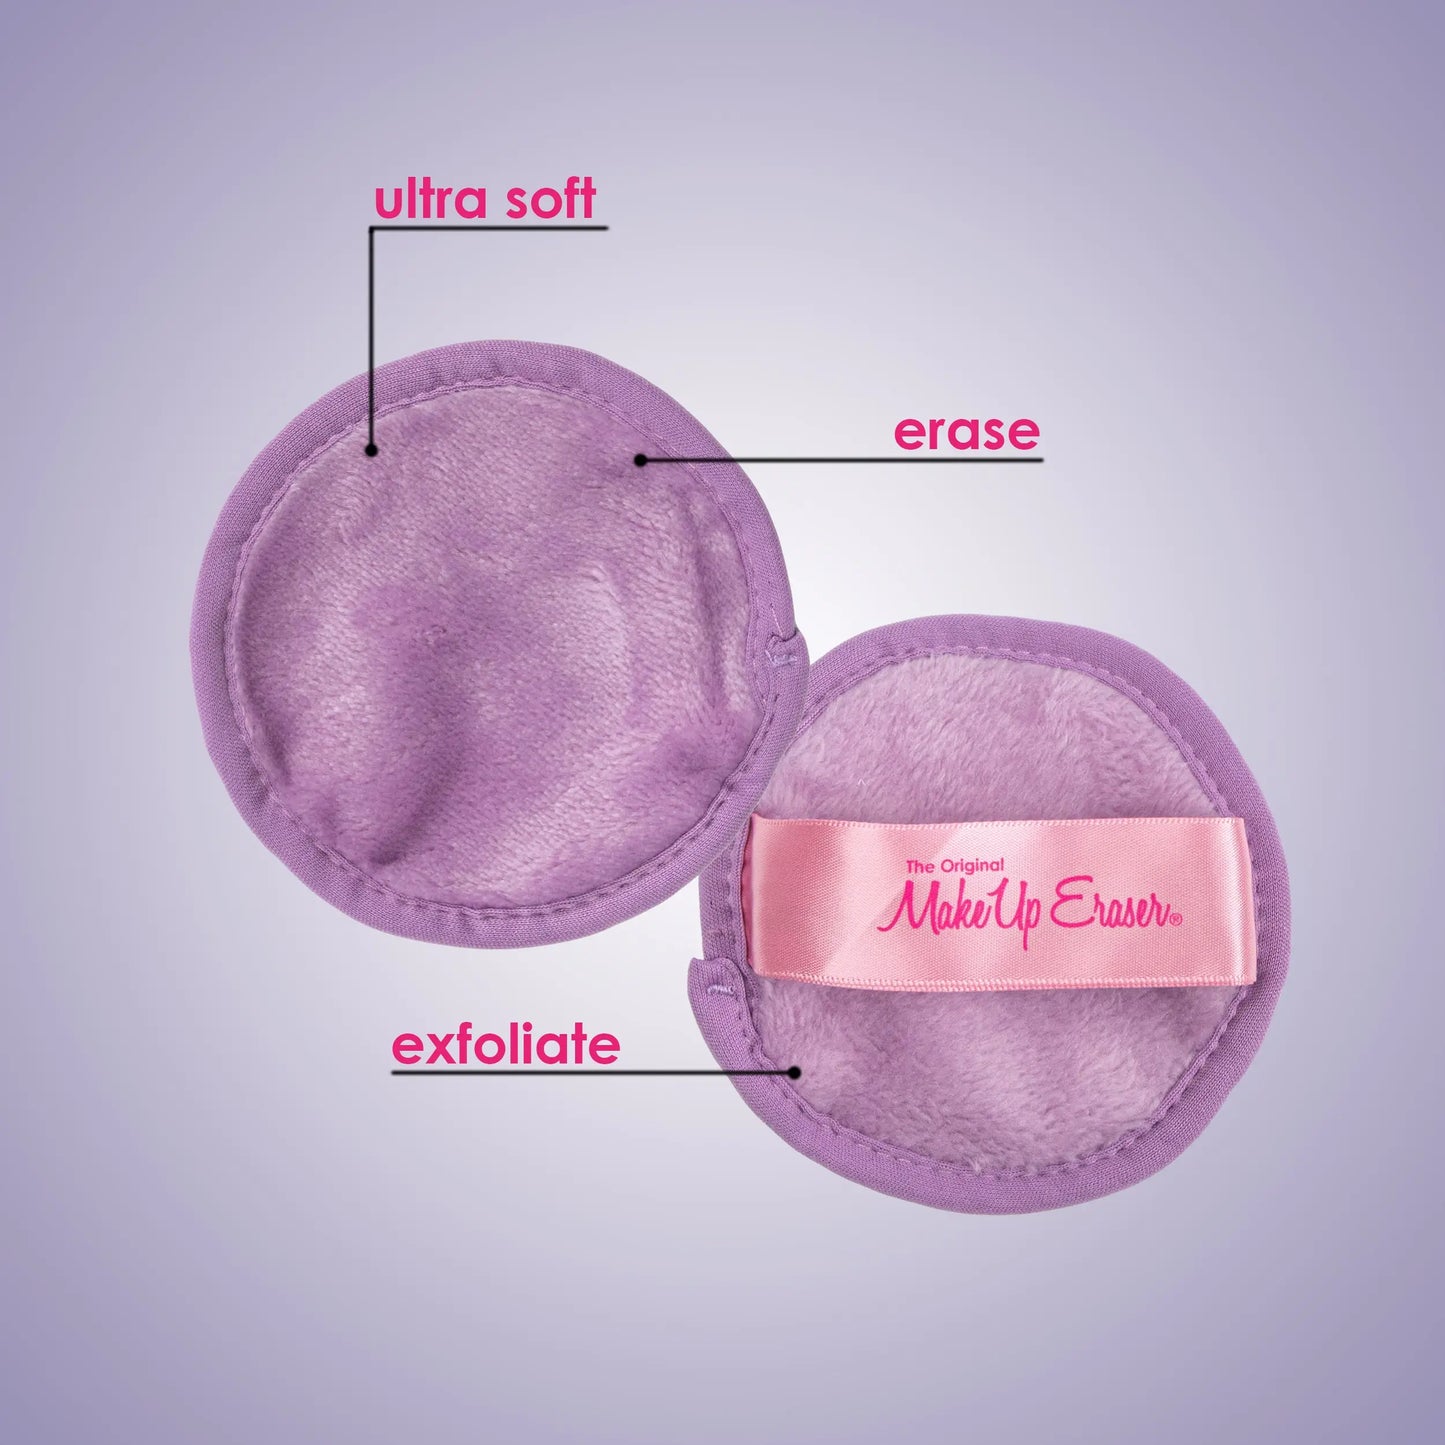 MakeUp Eraser 7-Day Sets - Assorted Options